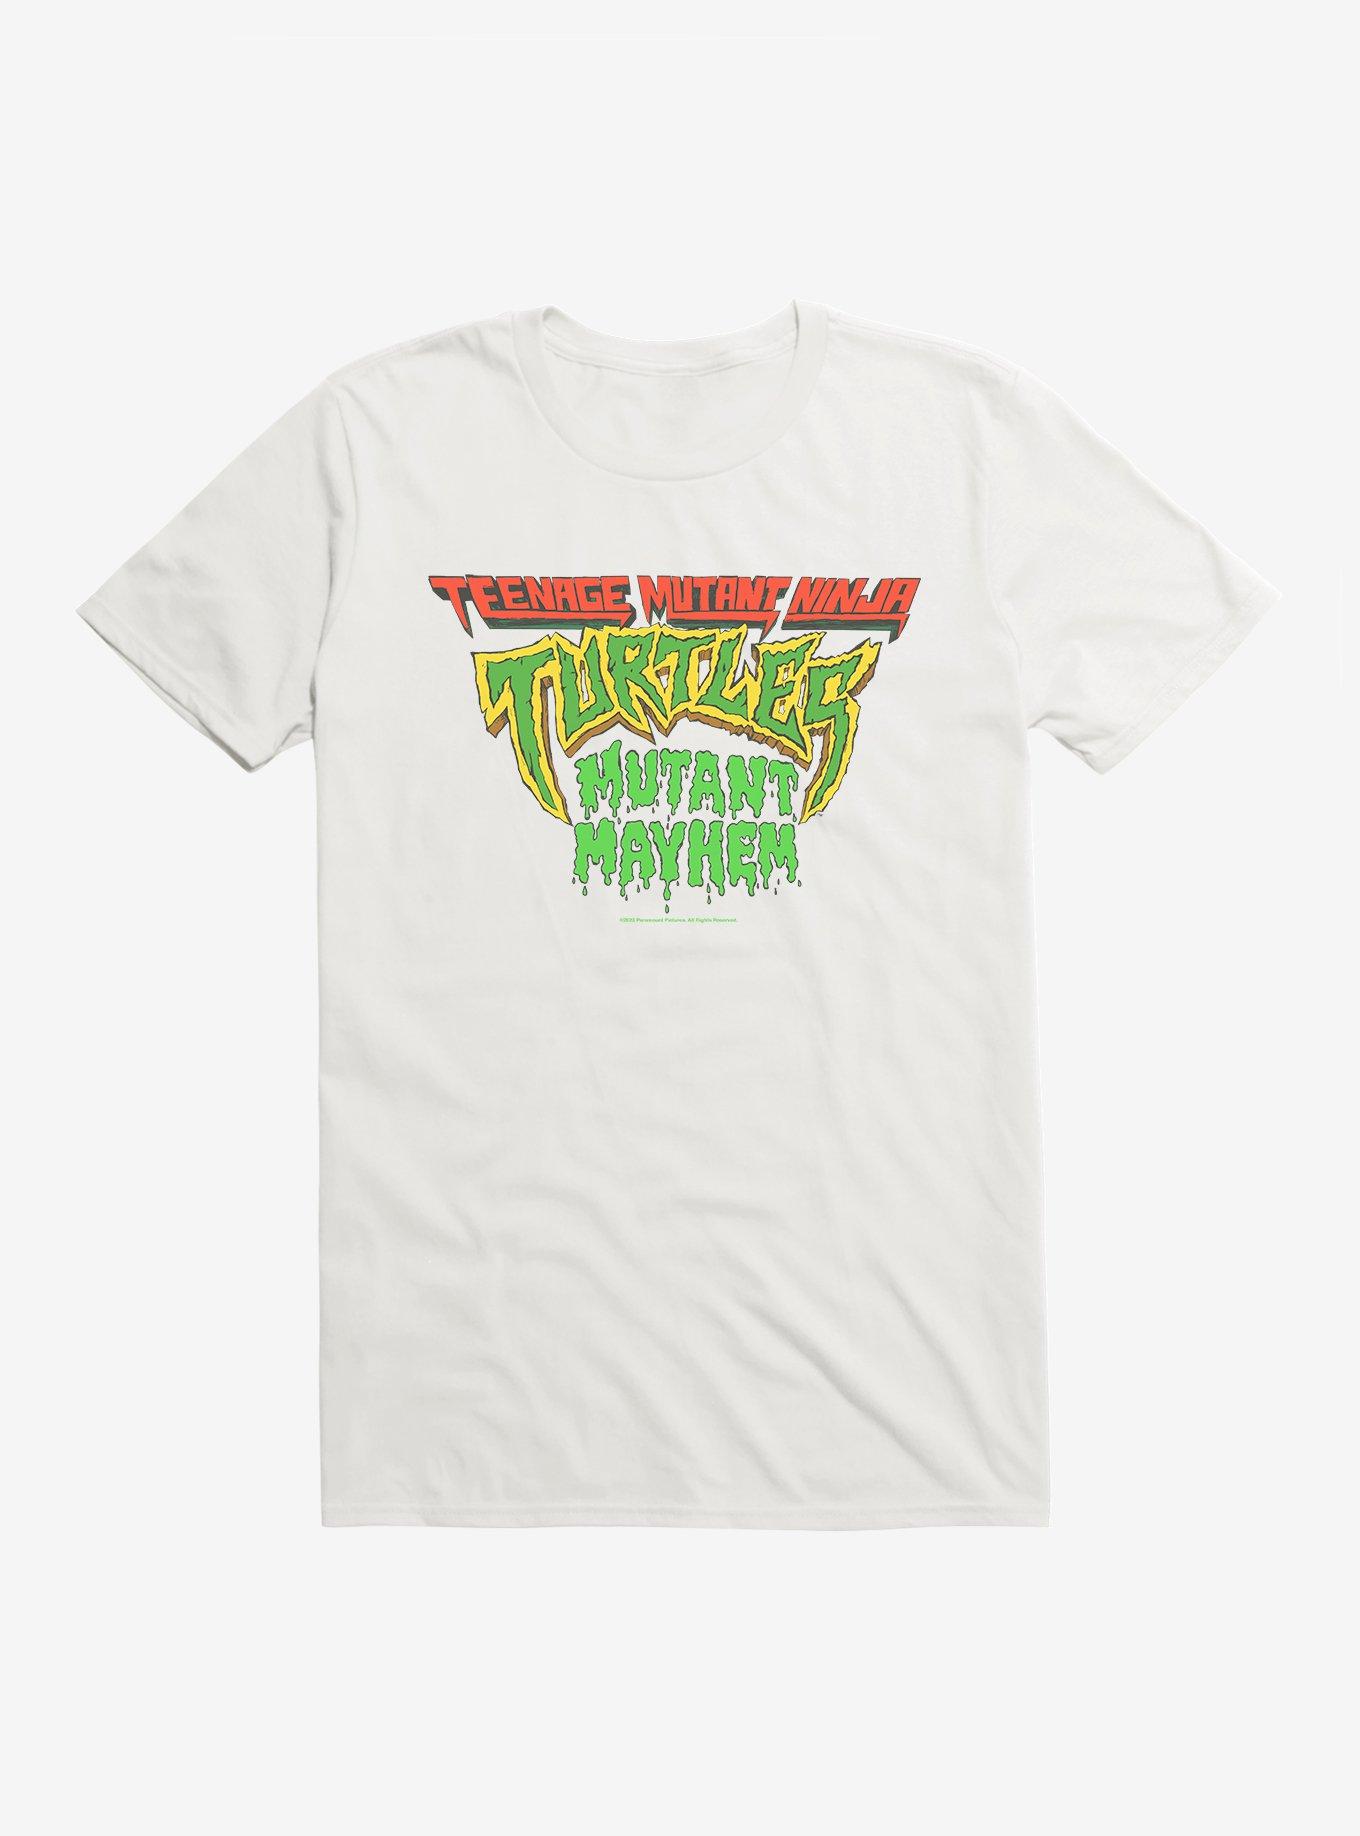 Teenage Mutant Ninja Turtles: Mutant Mayhem 1980's TMNT Merch